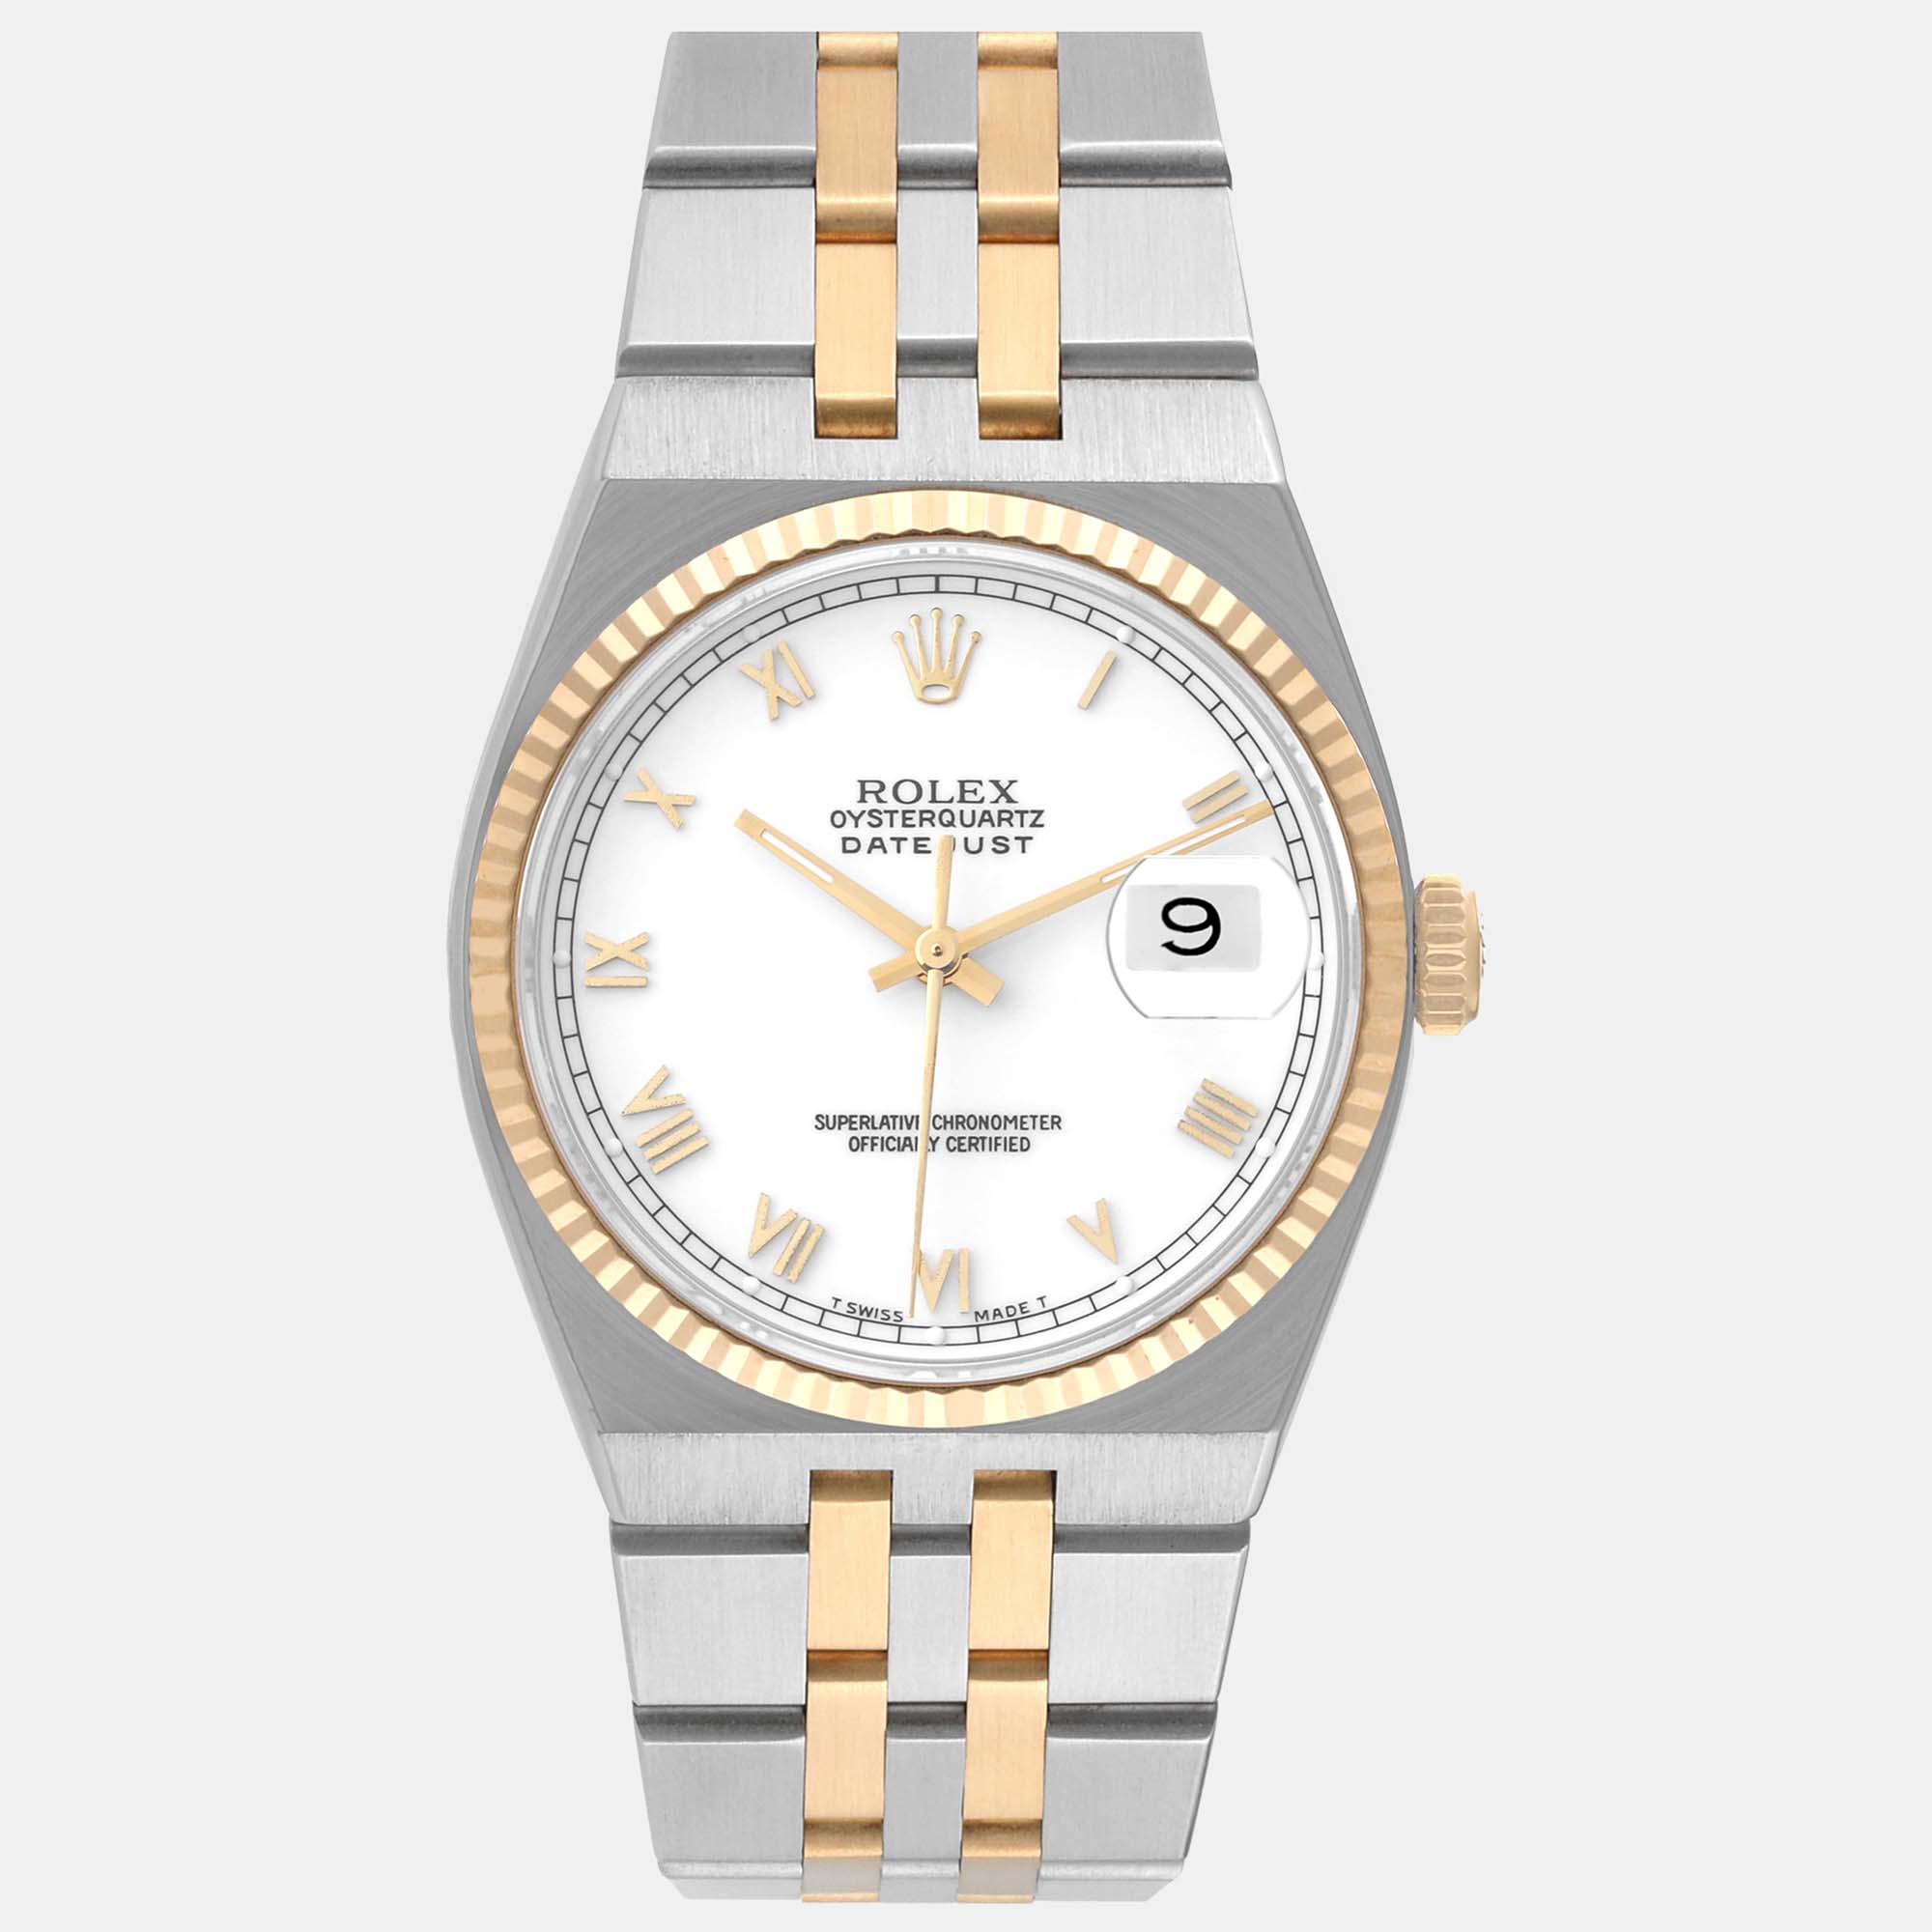 

Rolex Oysterquartz Datejust Steel Yellow Gold Men's Watch 36 mm, White